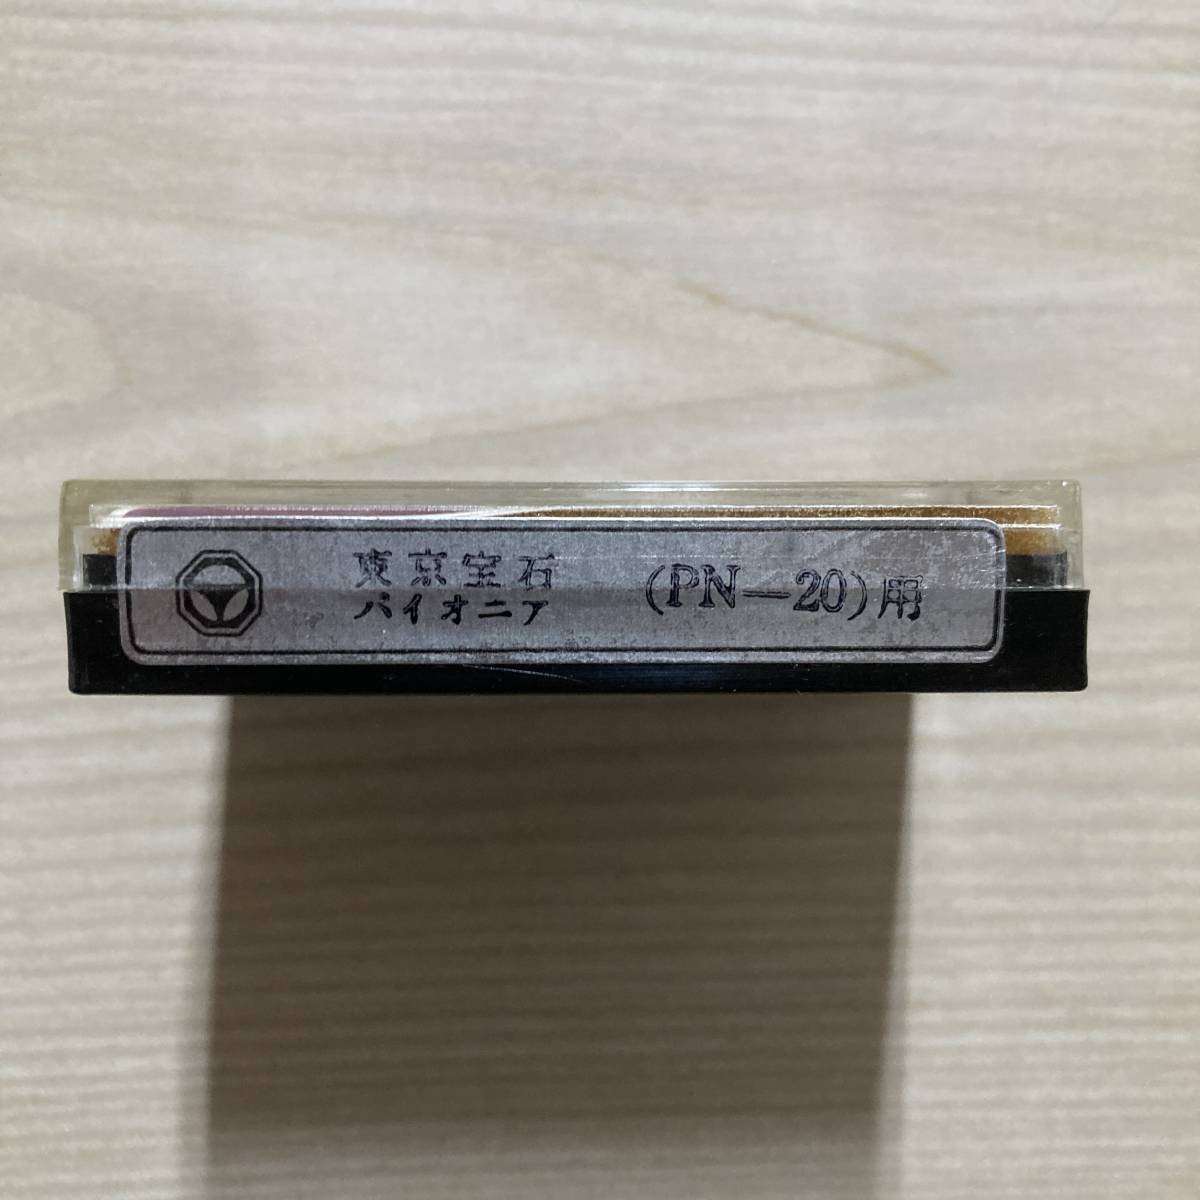  граммофонная игла Tokyo драгоценнный камень Pioneer (PN-20) для [033]